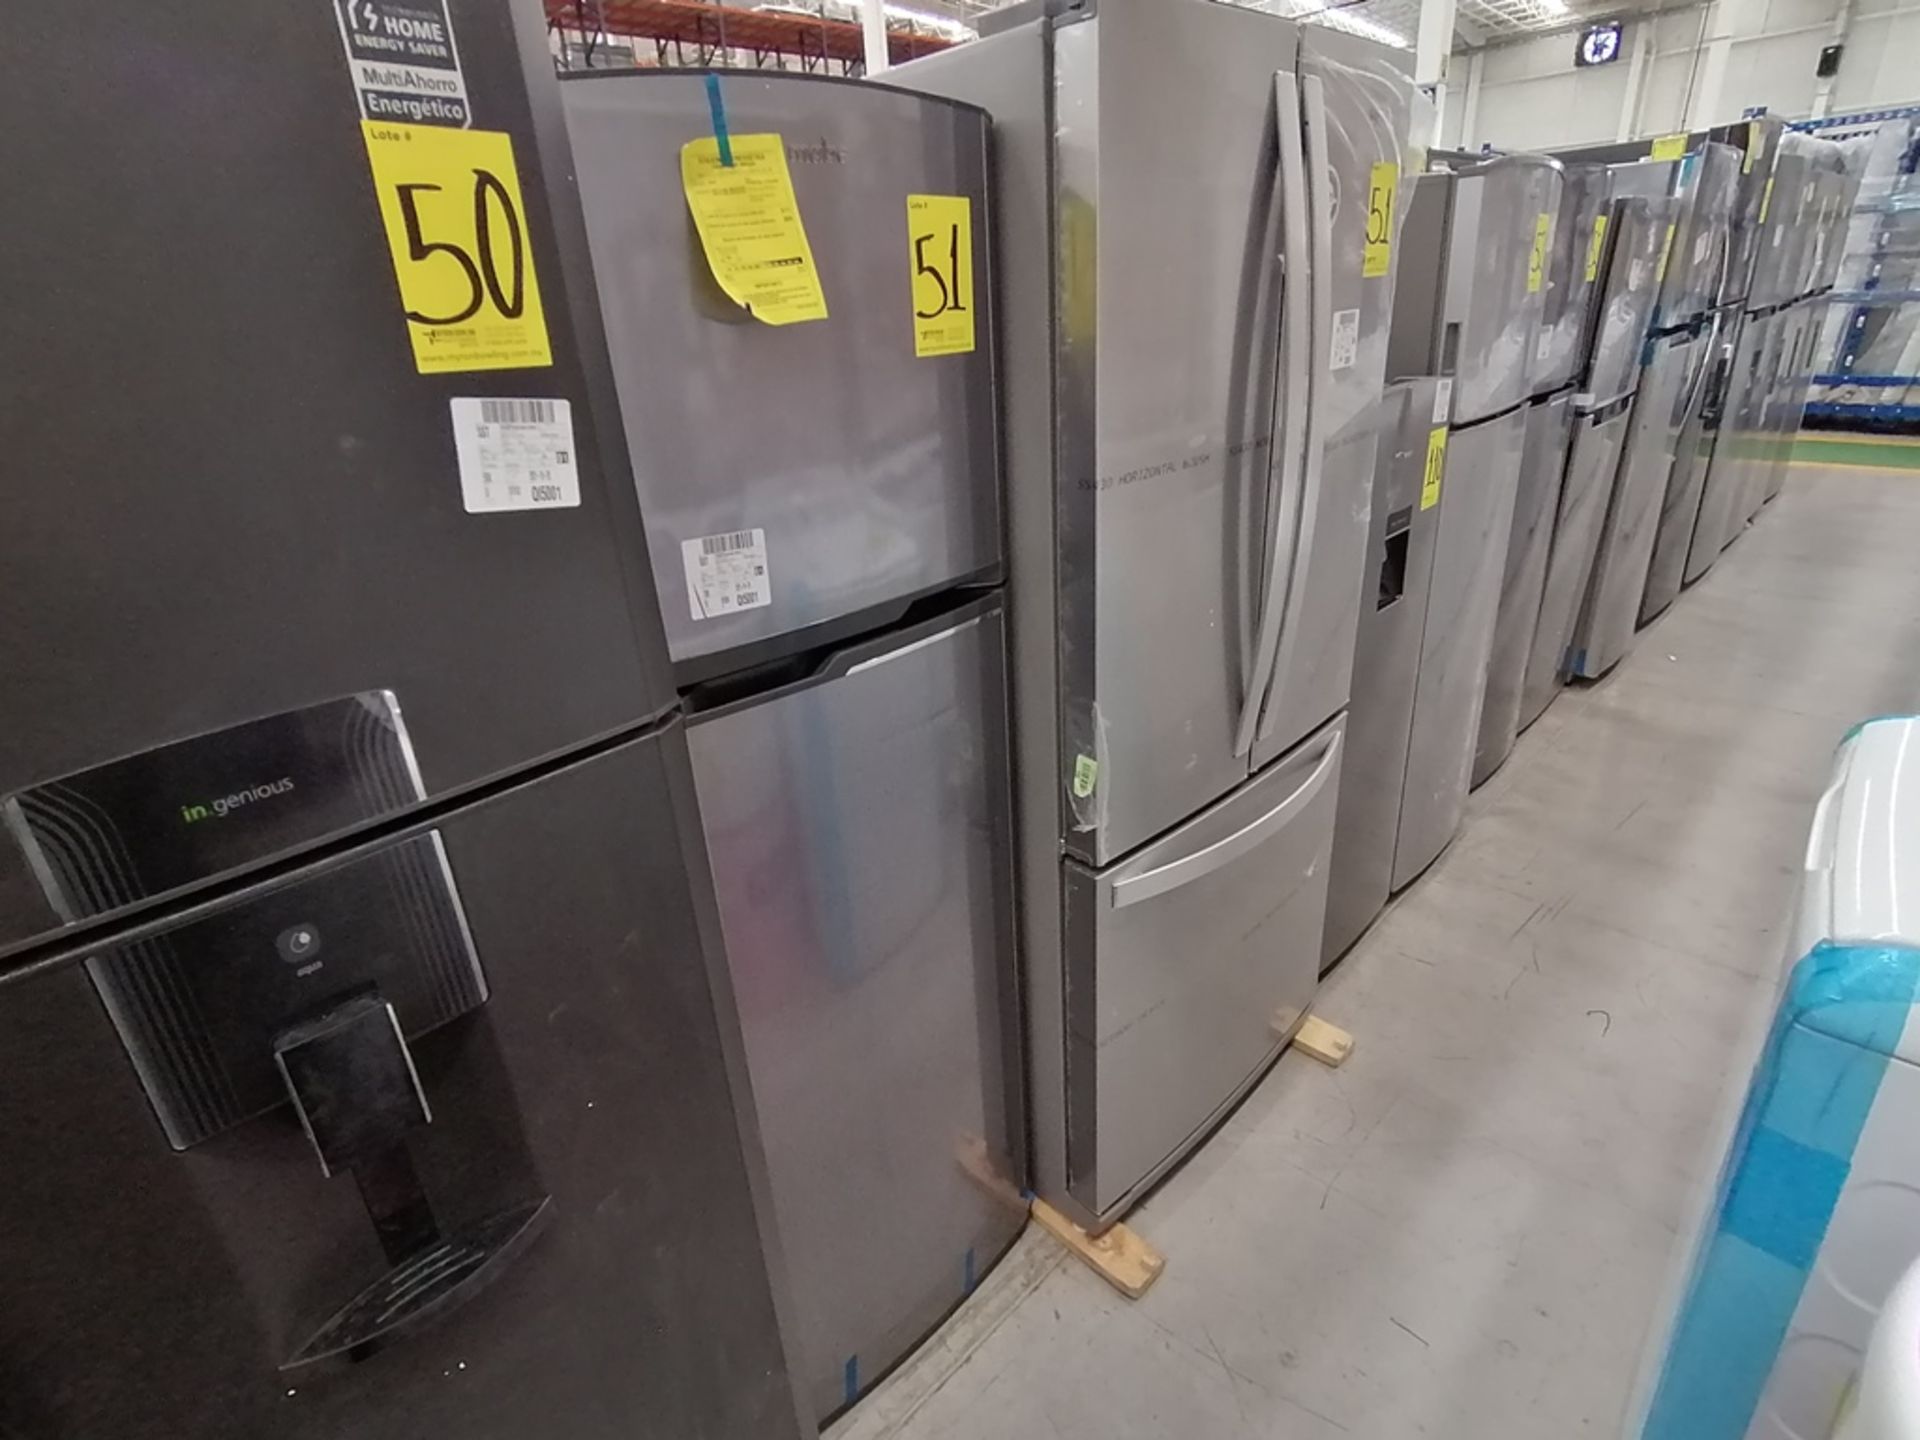 Lote de 2 refrigeradores incluye: 1 Refrigerador, Marca Mabe, Modelo RMA1025VMX, Serie 2111B618024, - Image 2 of 15